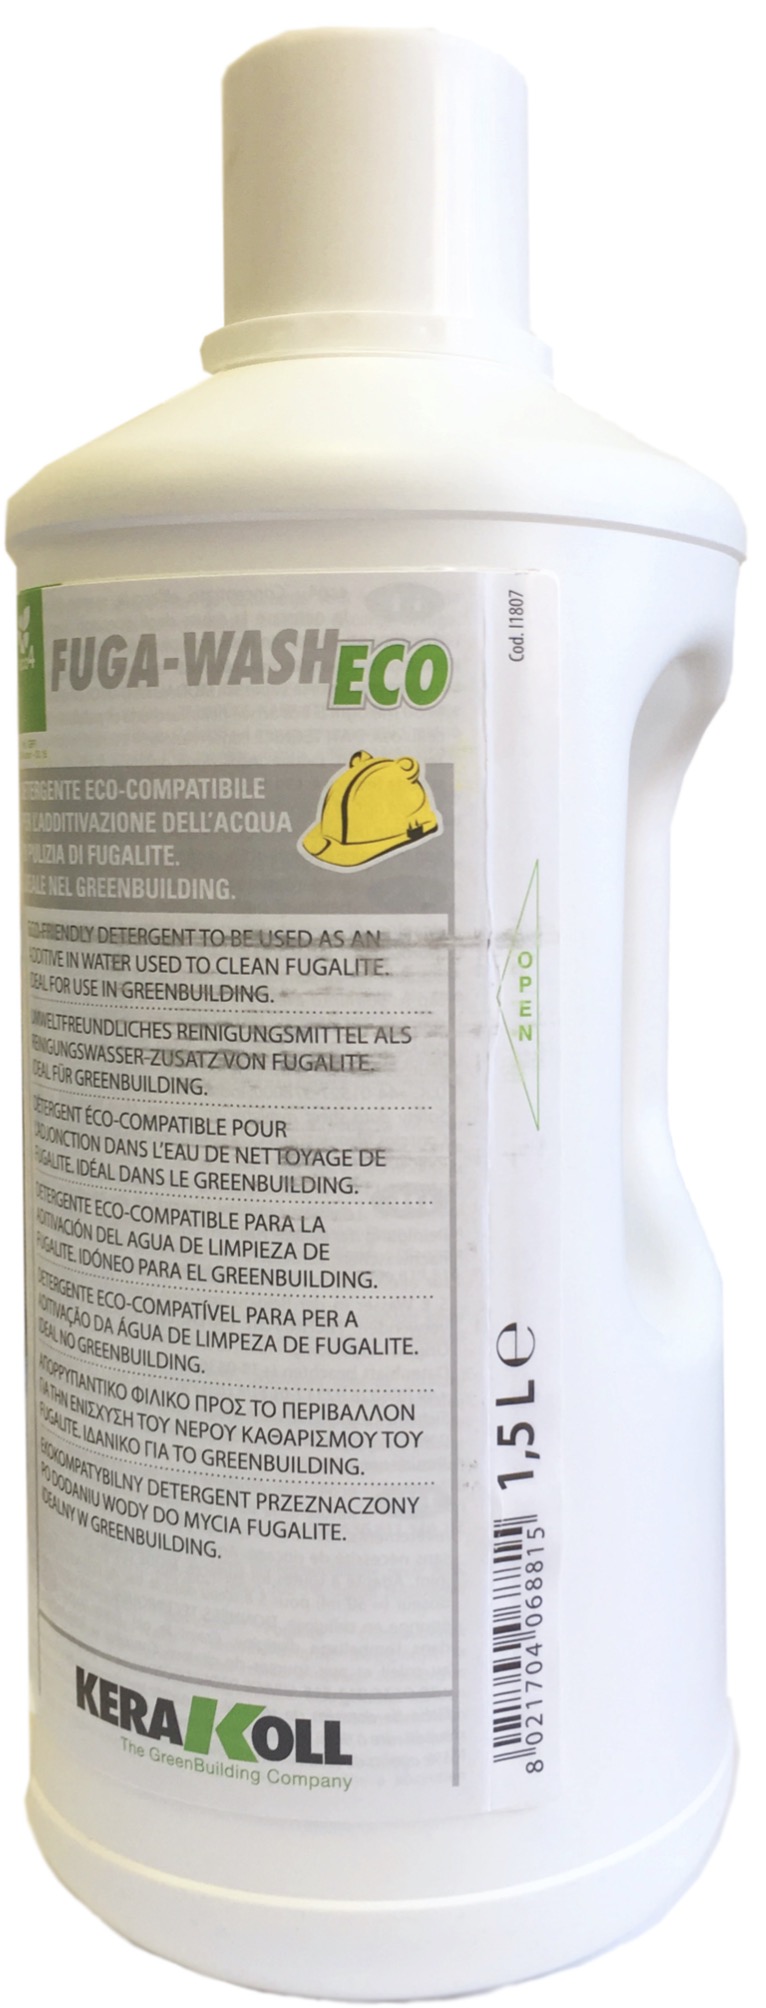 Смывка для эпоксидной затирки Kerakoll Fugalite Eco 1.5л.FUGA-WASH ECO